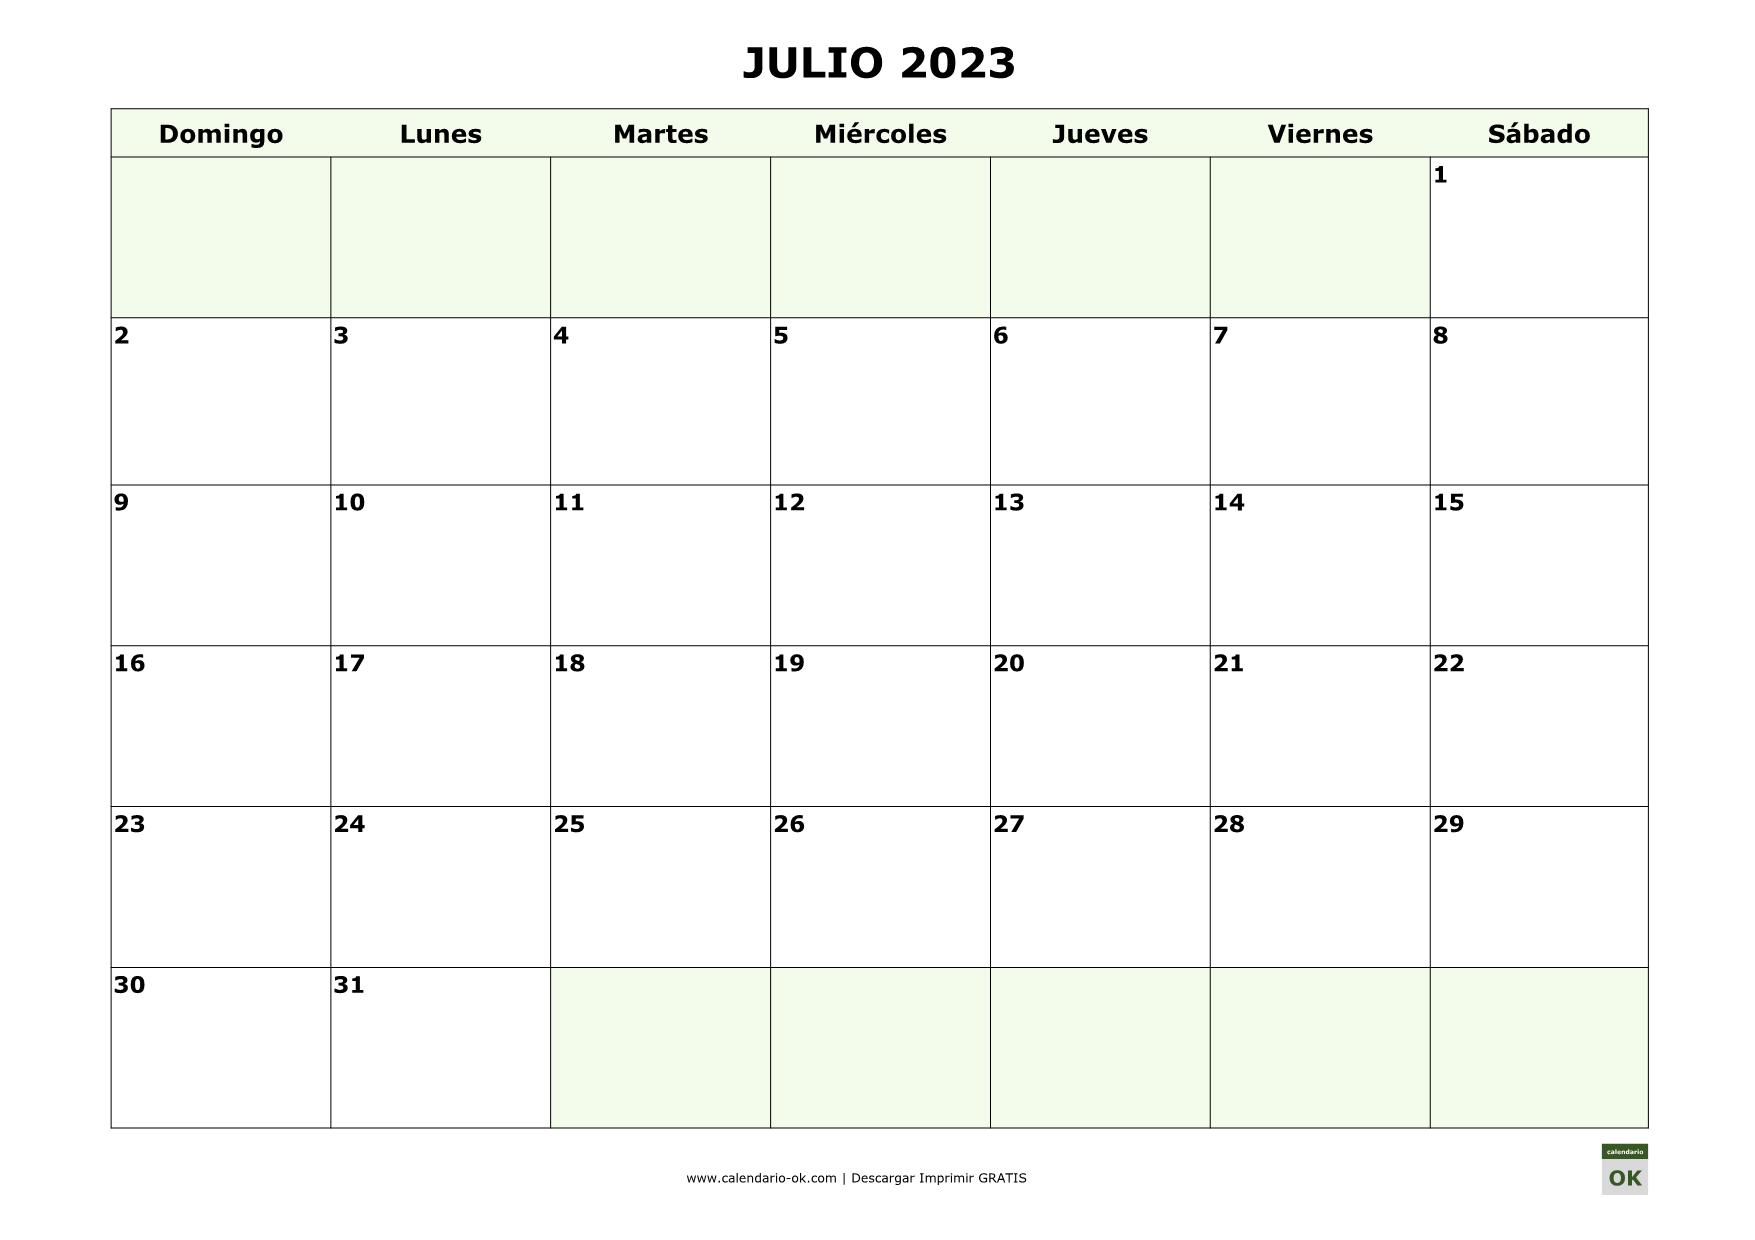 JULIO 2023 empieza por DOMINGO